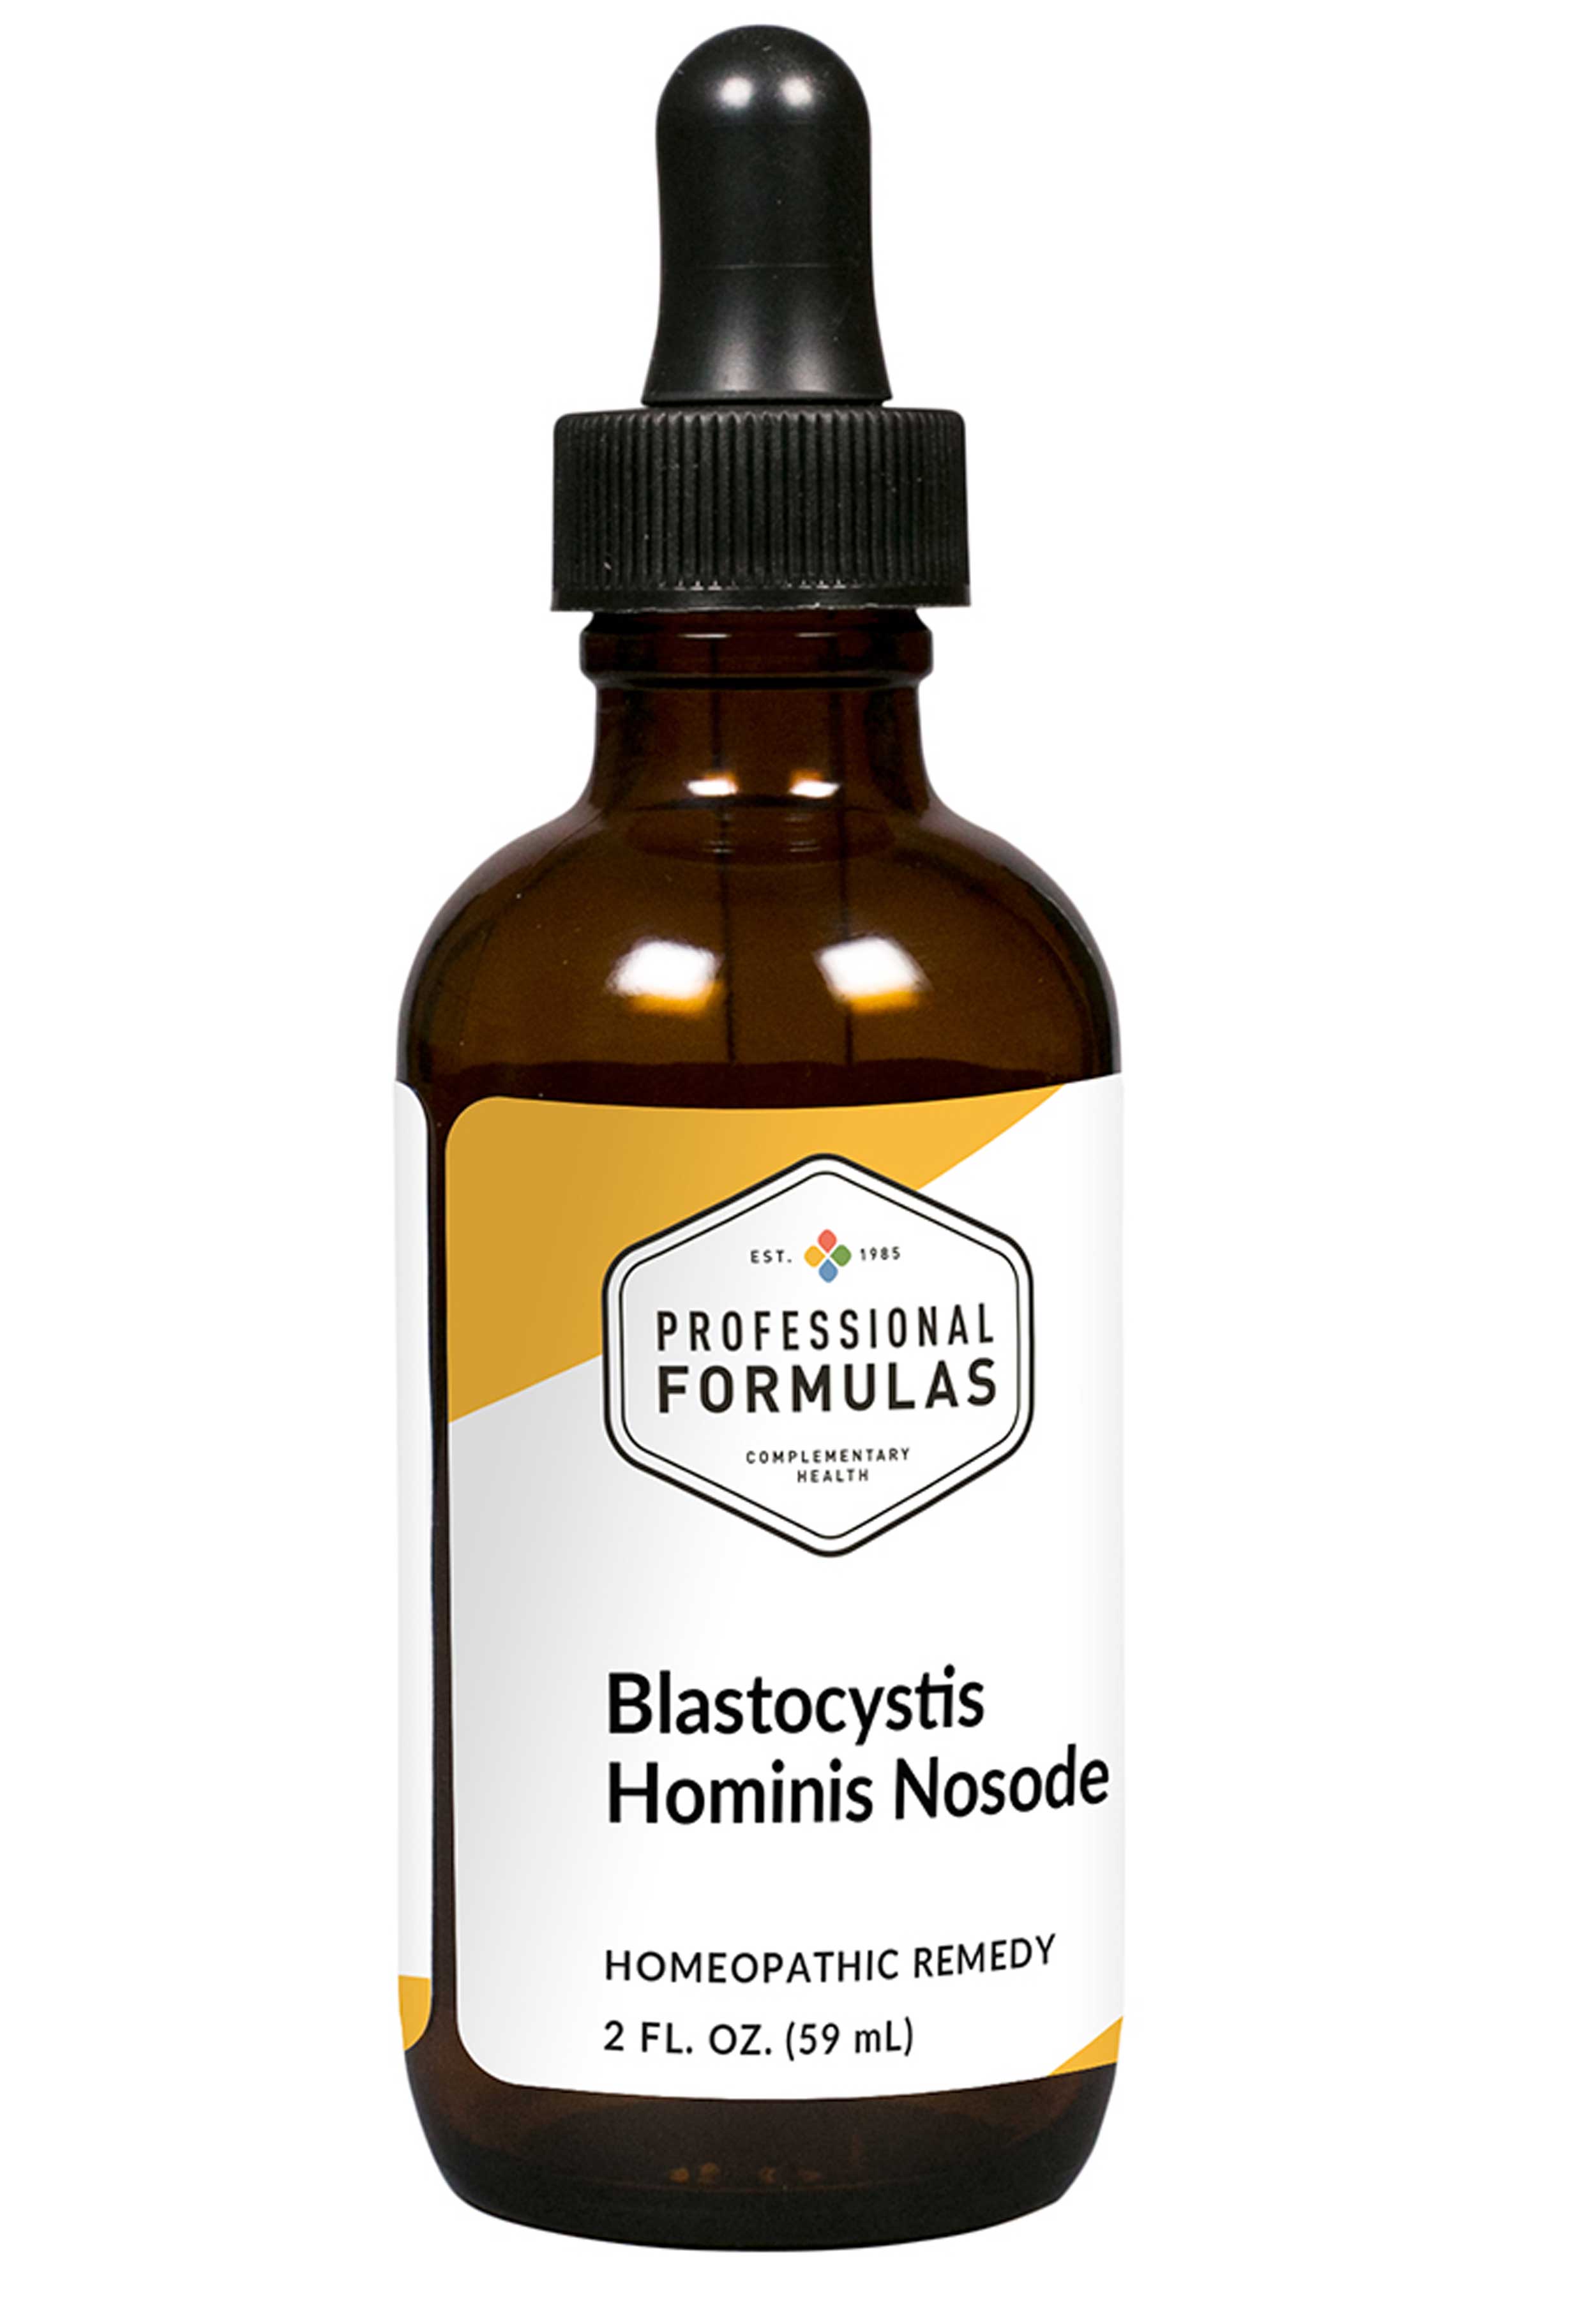 Professional Formulas Blastocystis Hominis Nosode